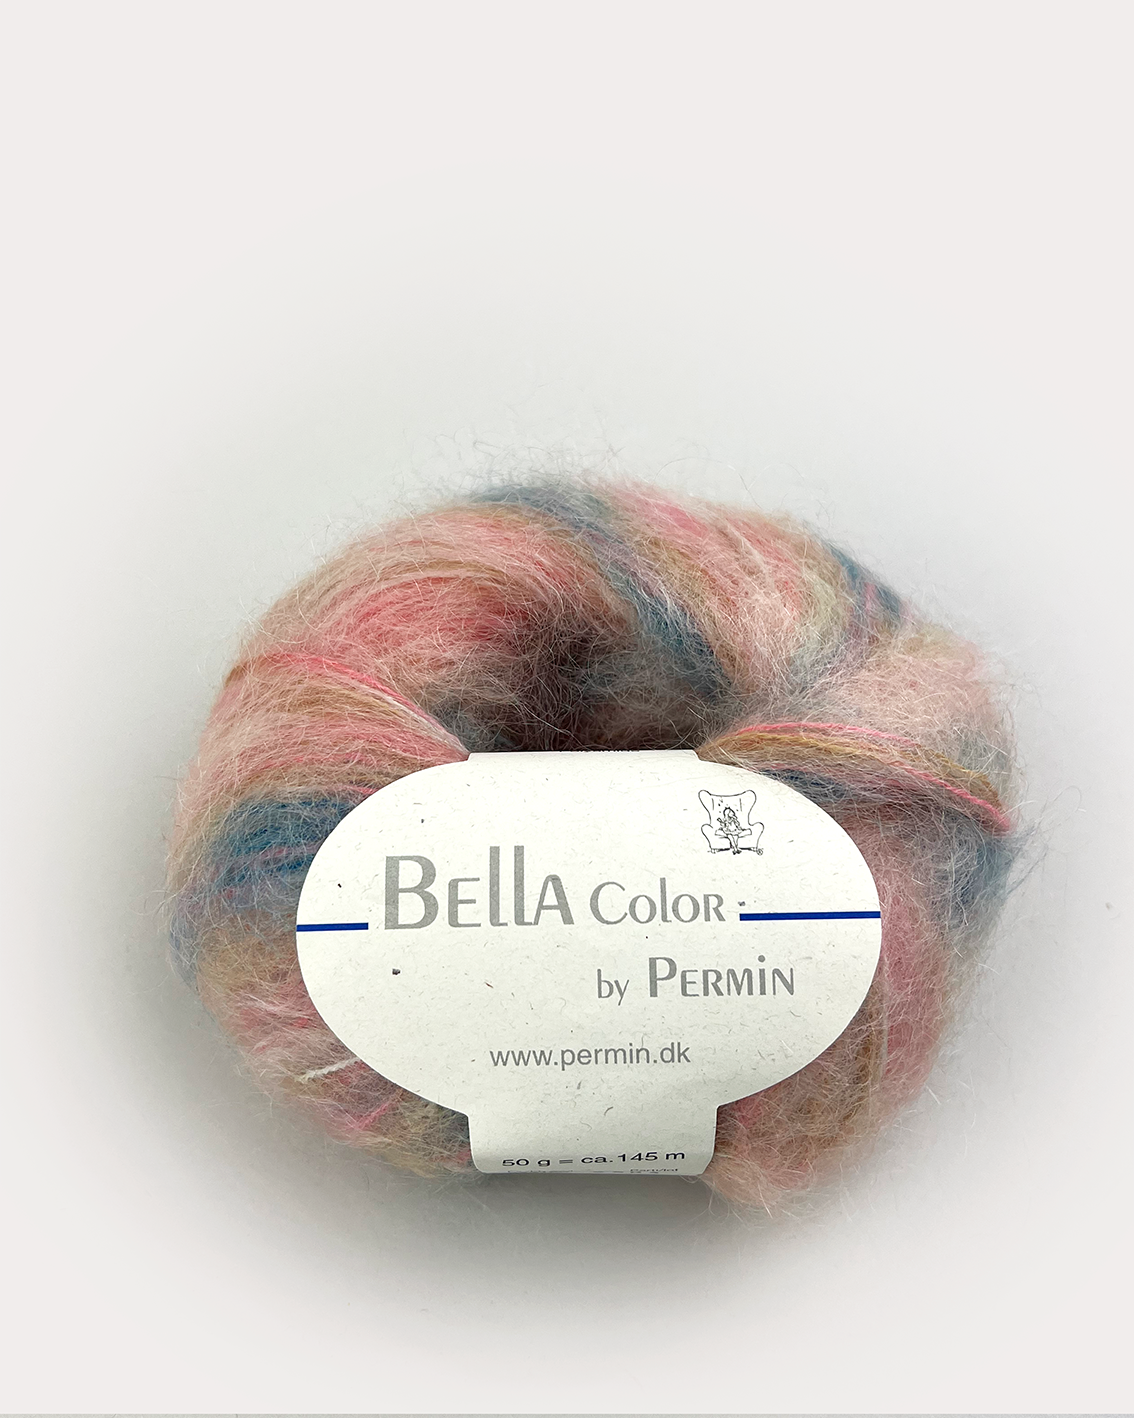 Bella Color by Permin